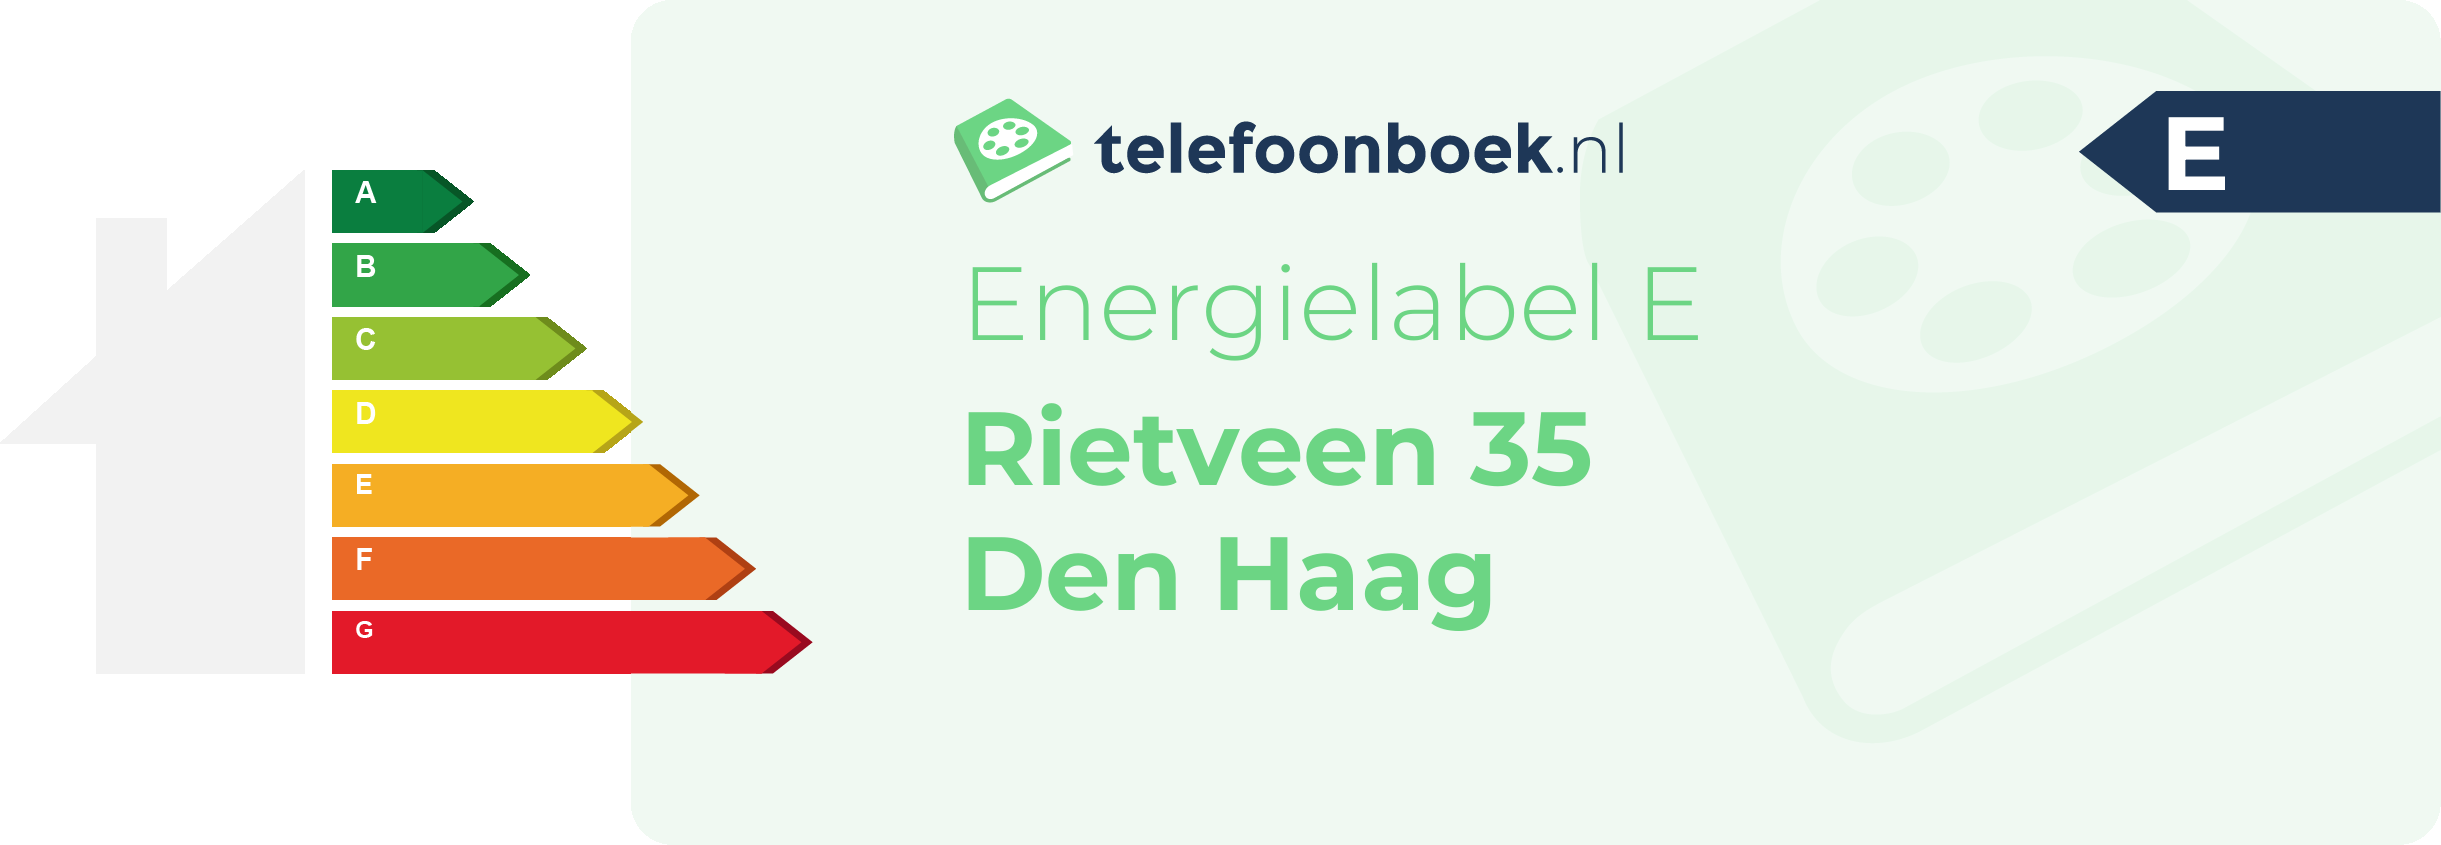 Energielabel Rietveen 35 Den Haag